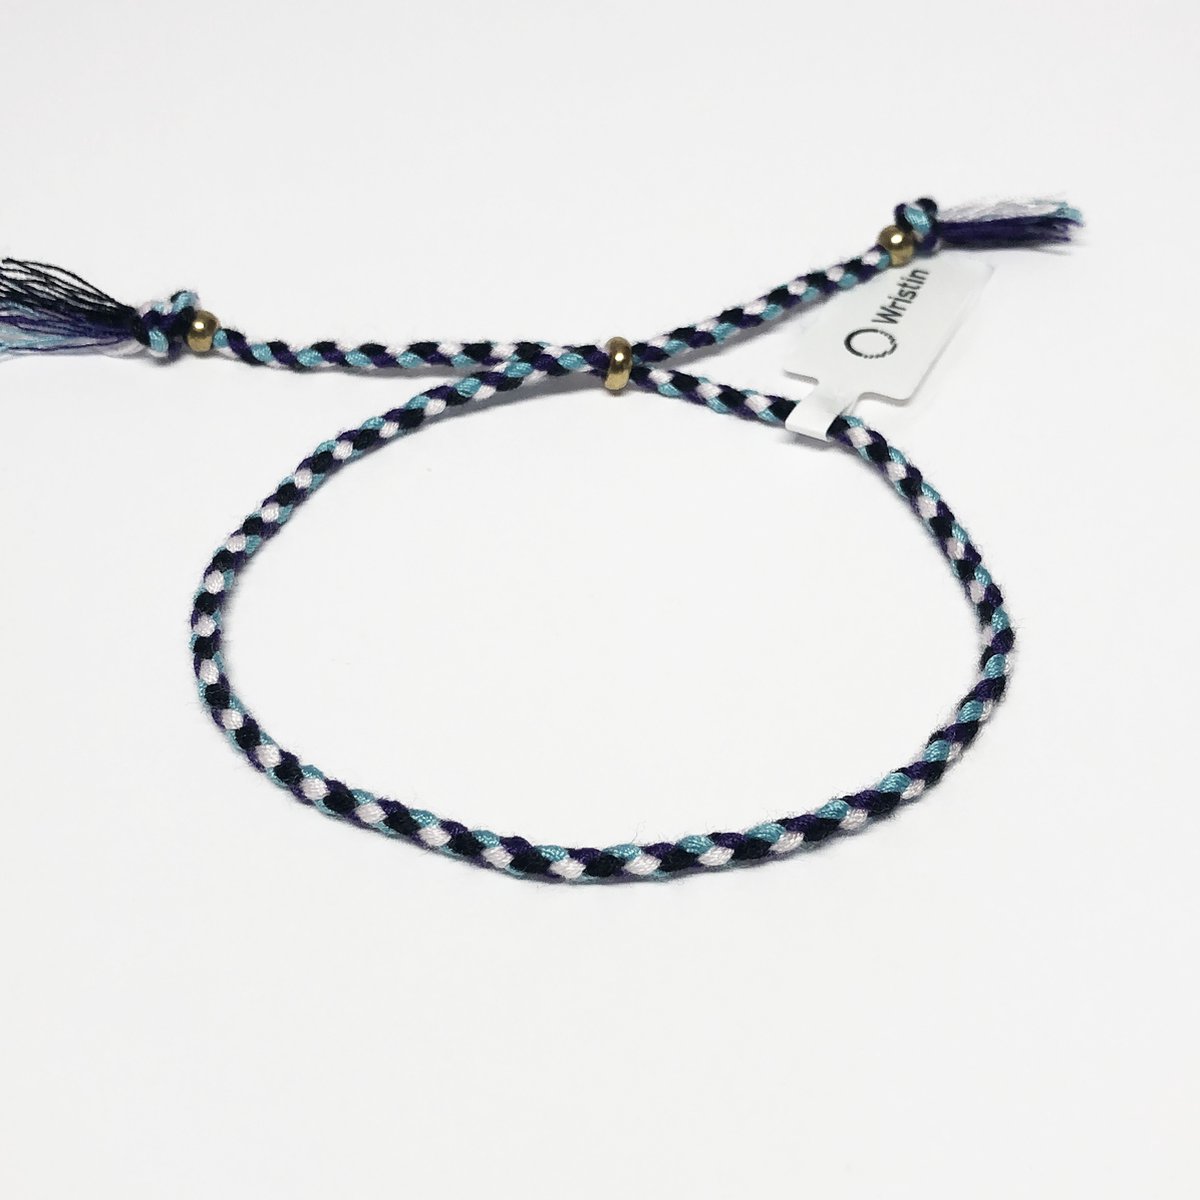 Wristin - Tibetaanse armband gevlochten zwart/paars/wit